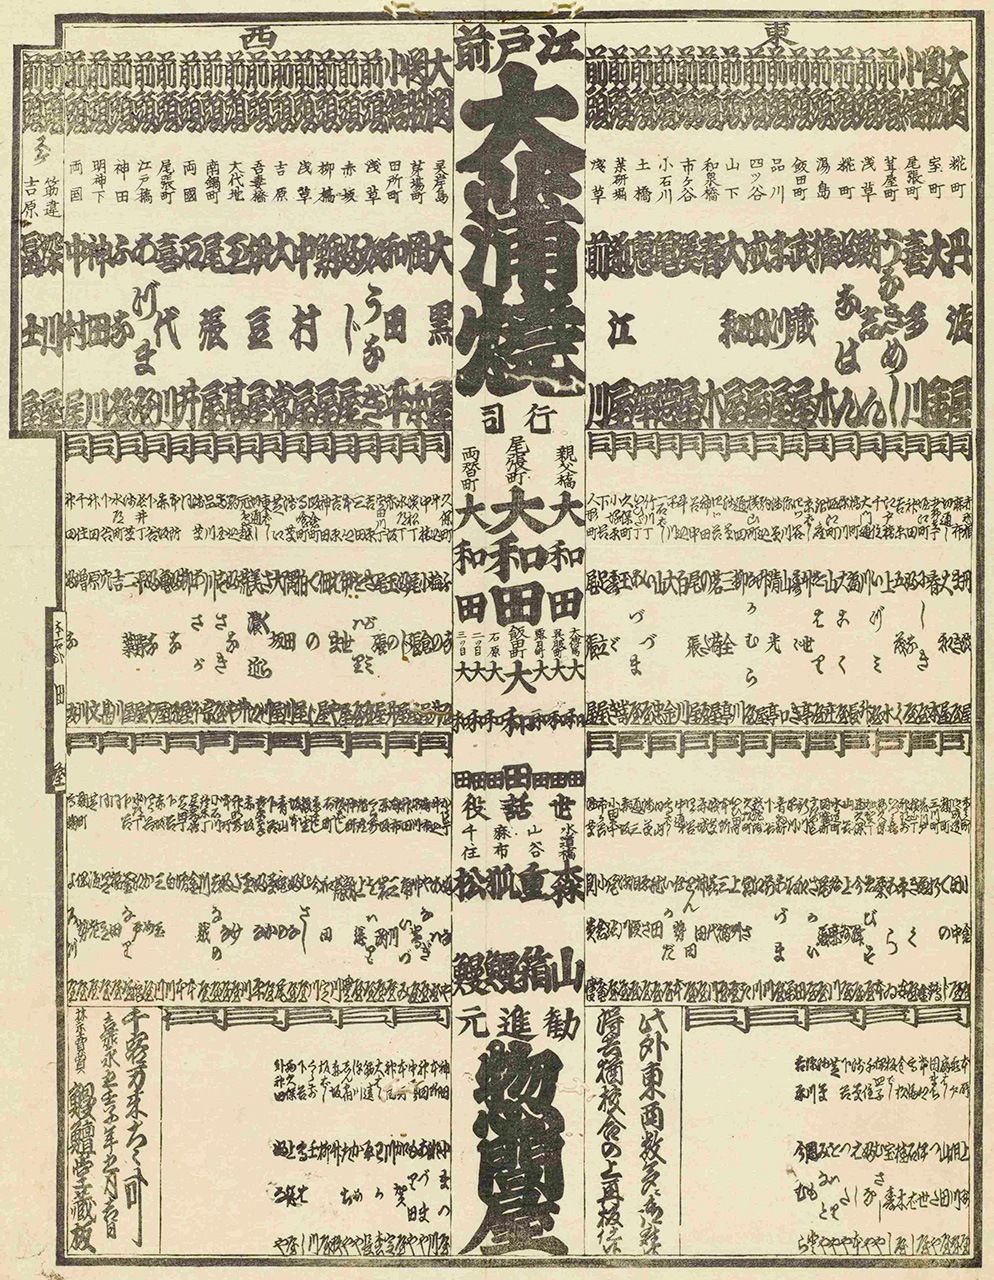 «Список эдомаэ оокабаяки», в котором оцениваются рестораны с блюдами из угря в Эдо в 5 году Каэй (коллекция специальной библиотеки Токийской столичной центральной библиотеки)